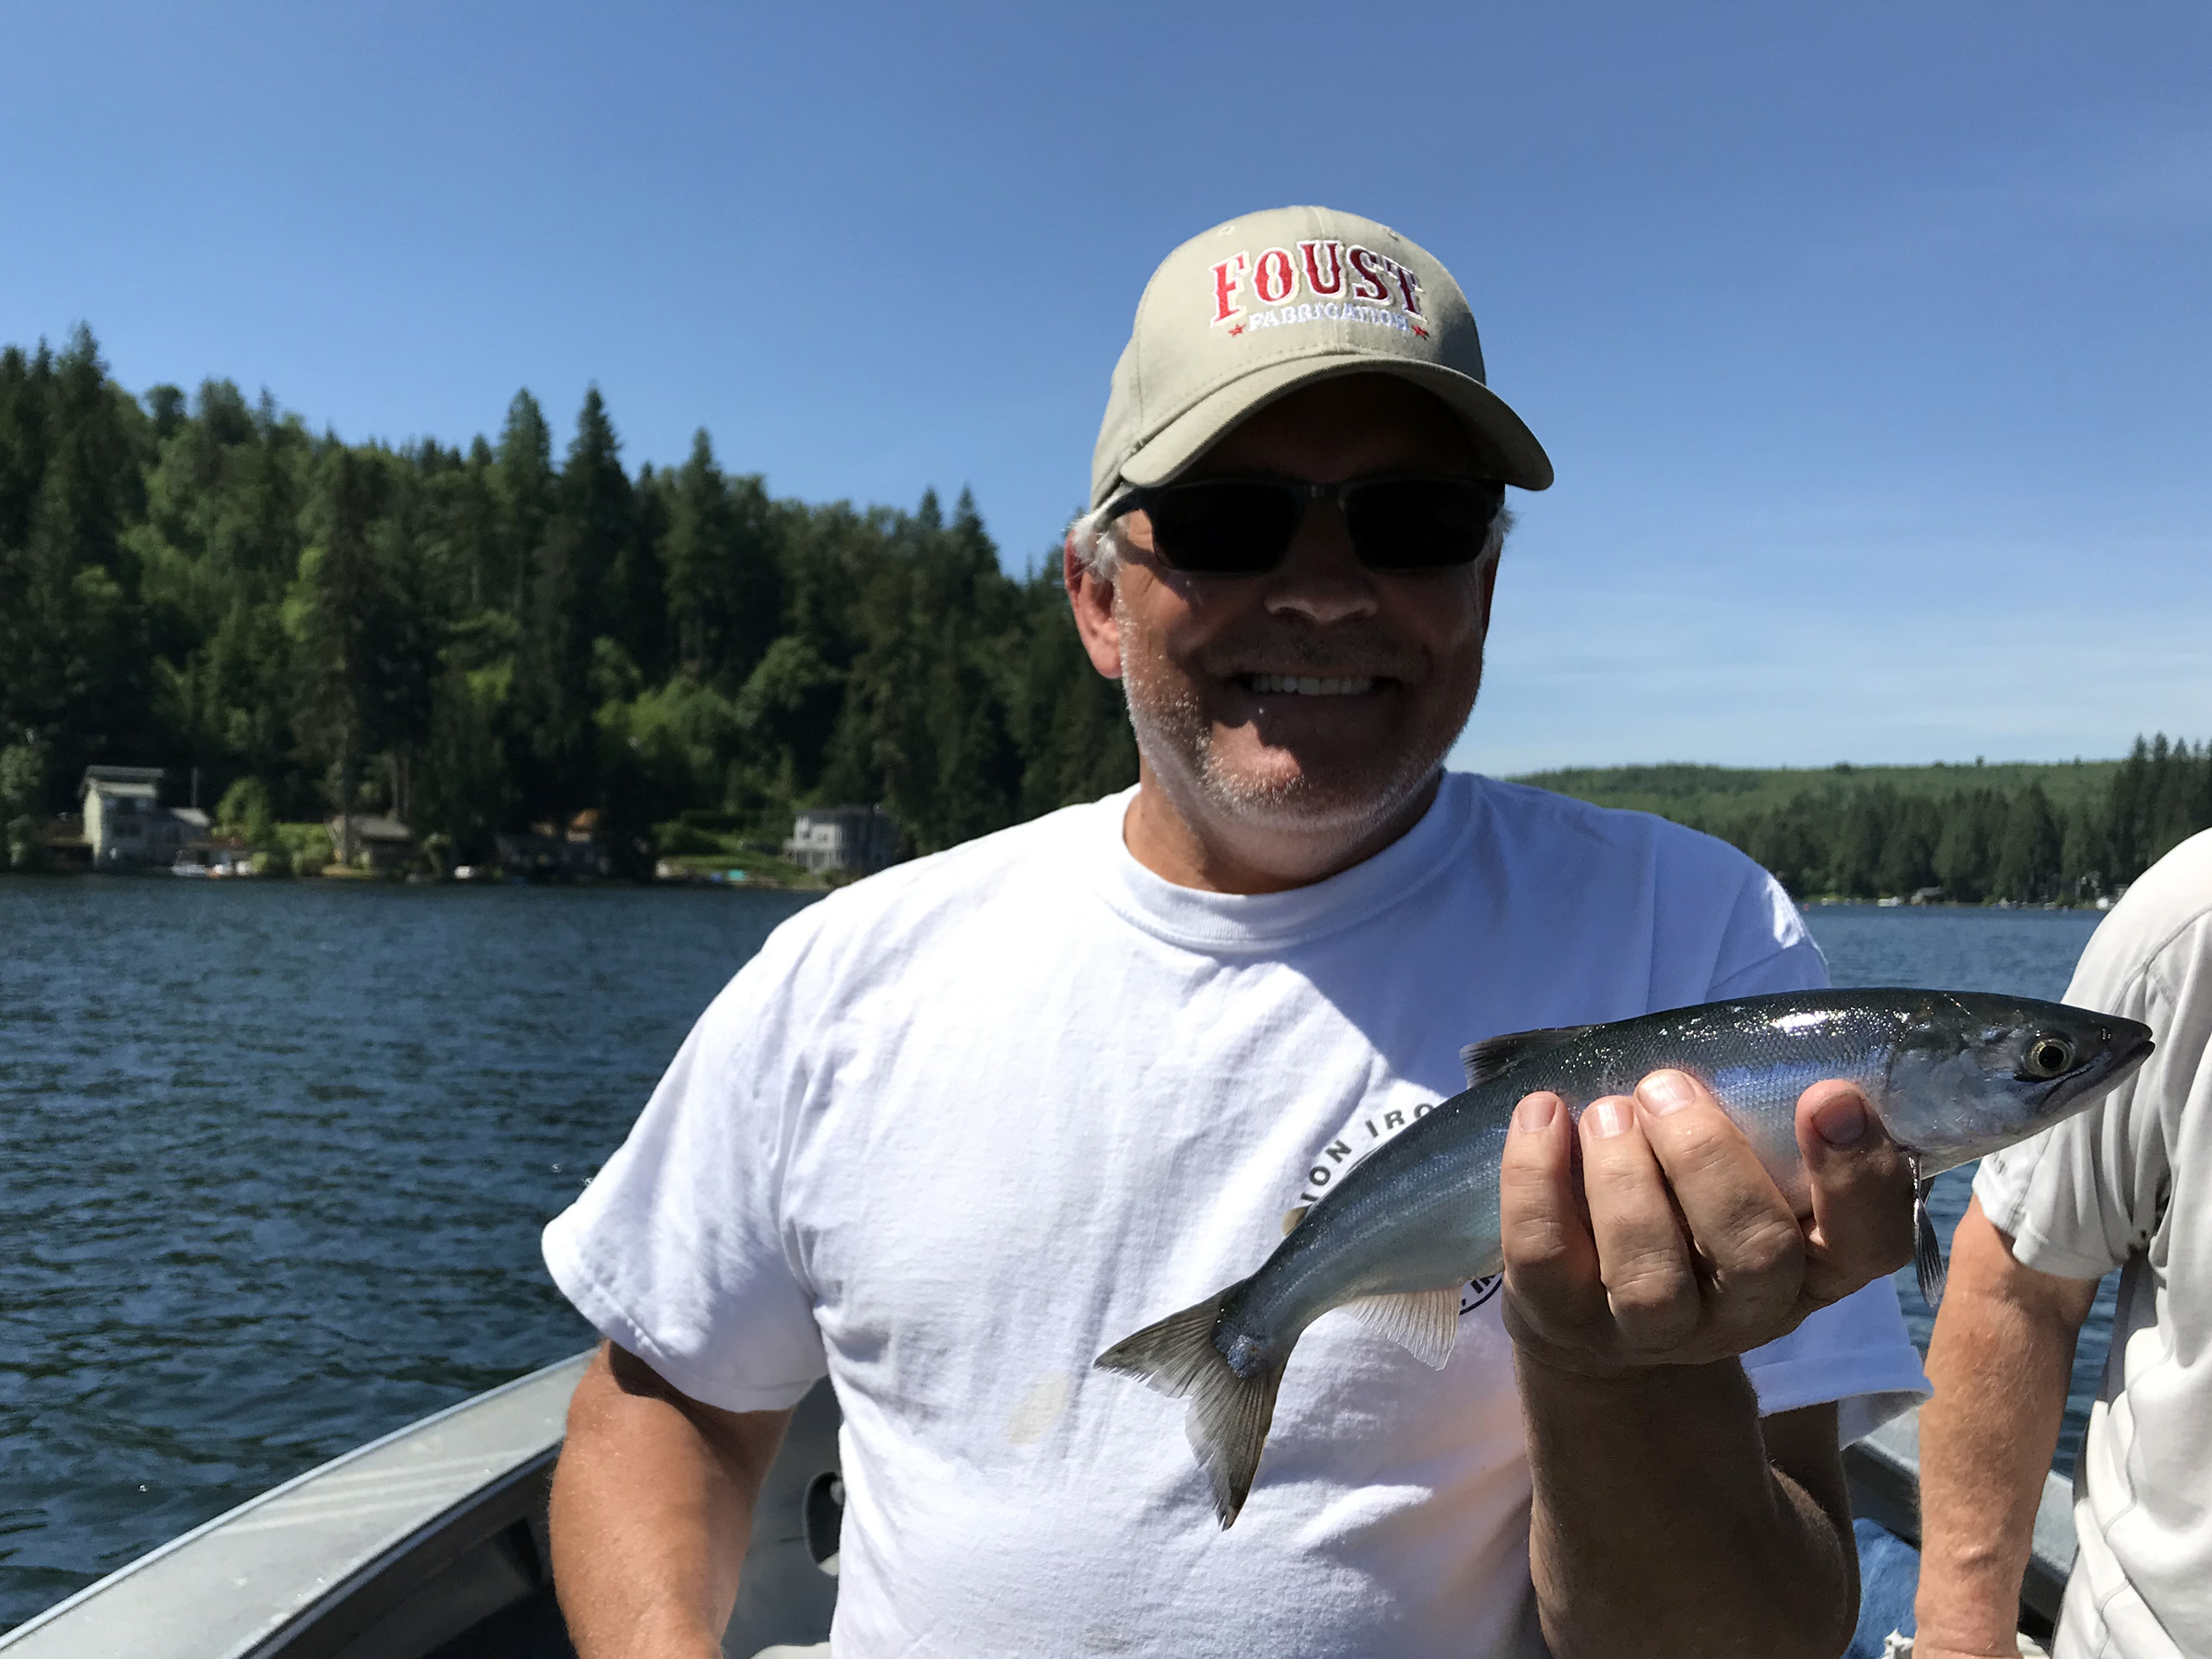 https://riptidefish.com/wp-content/uploads/2019/07/lake-stevens-fishing.jpg